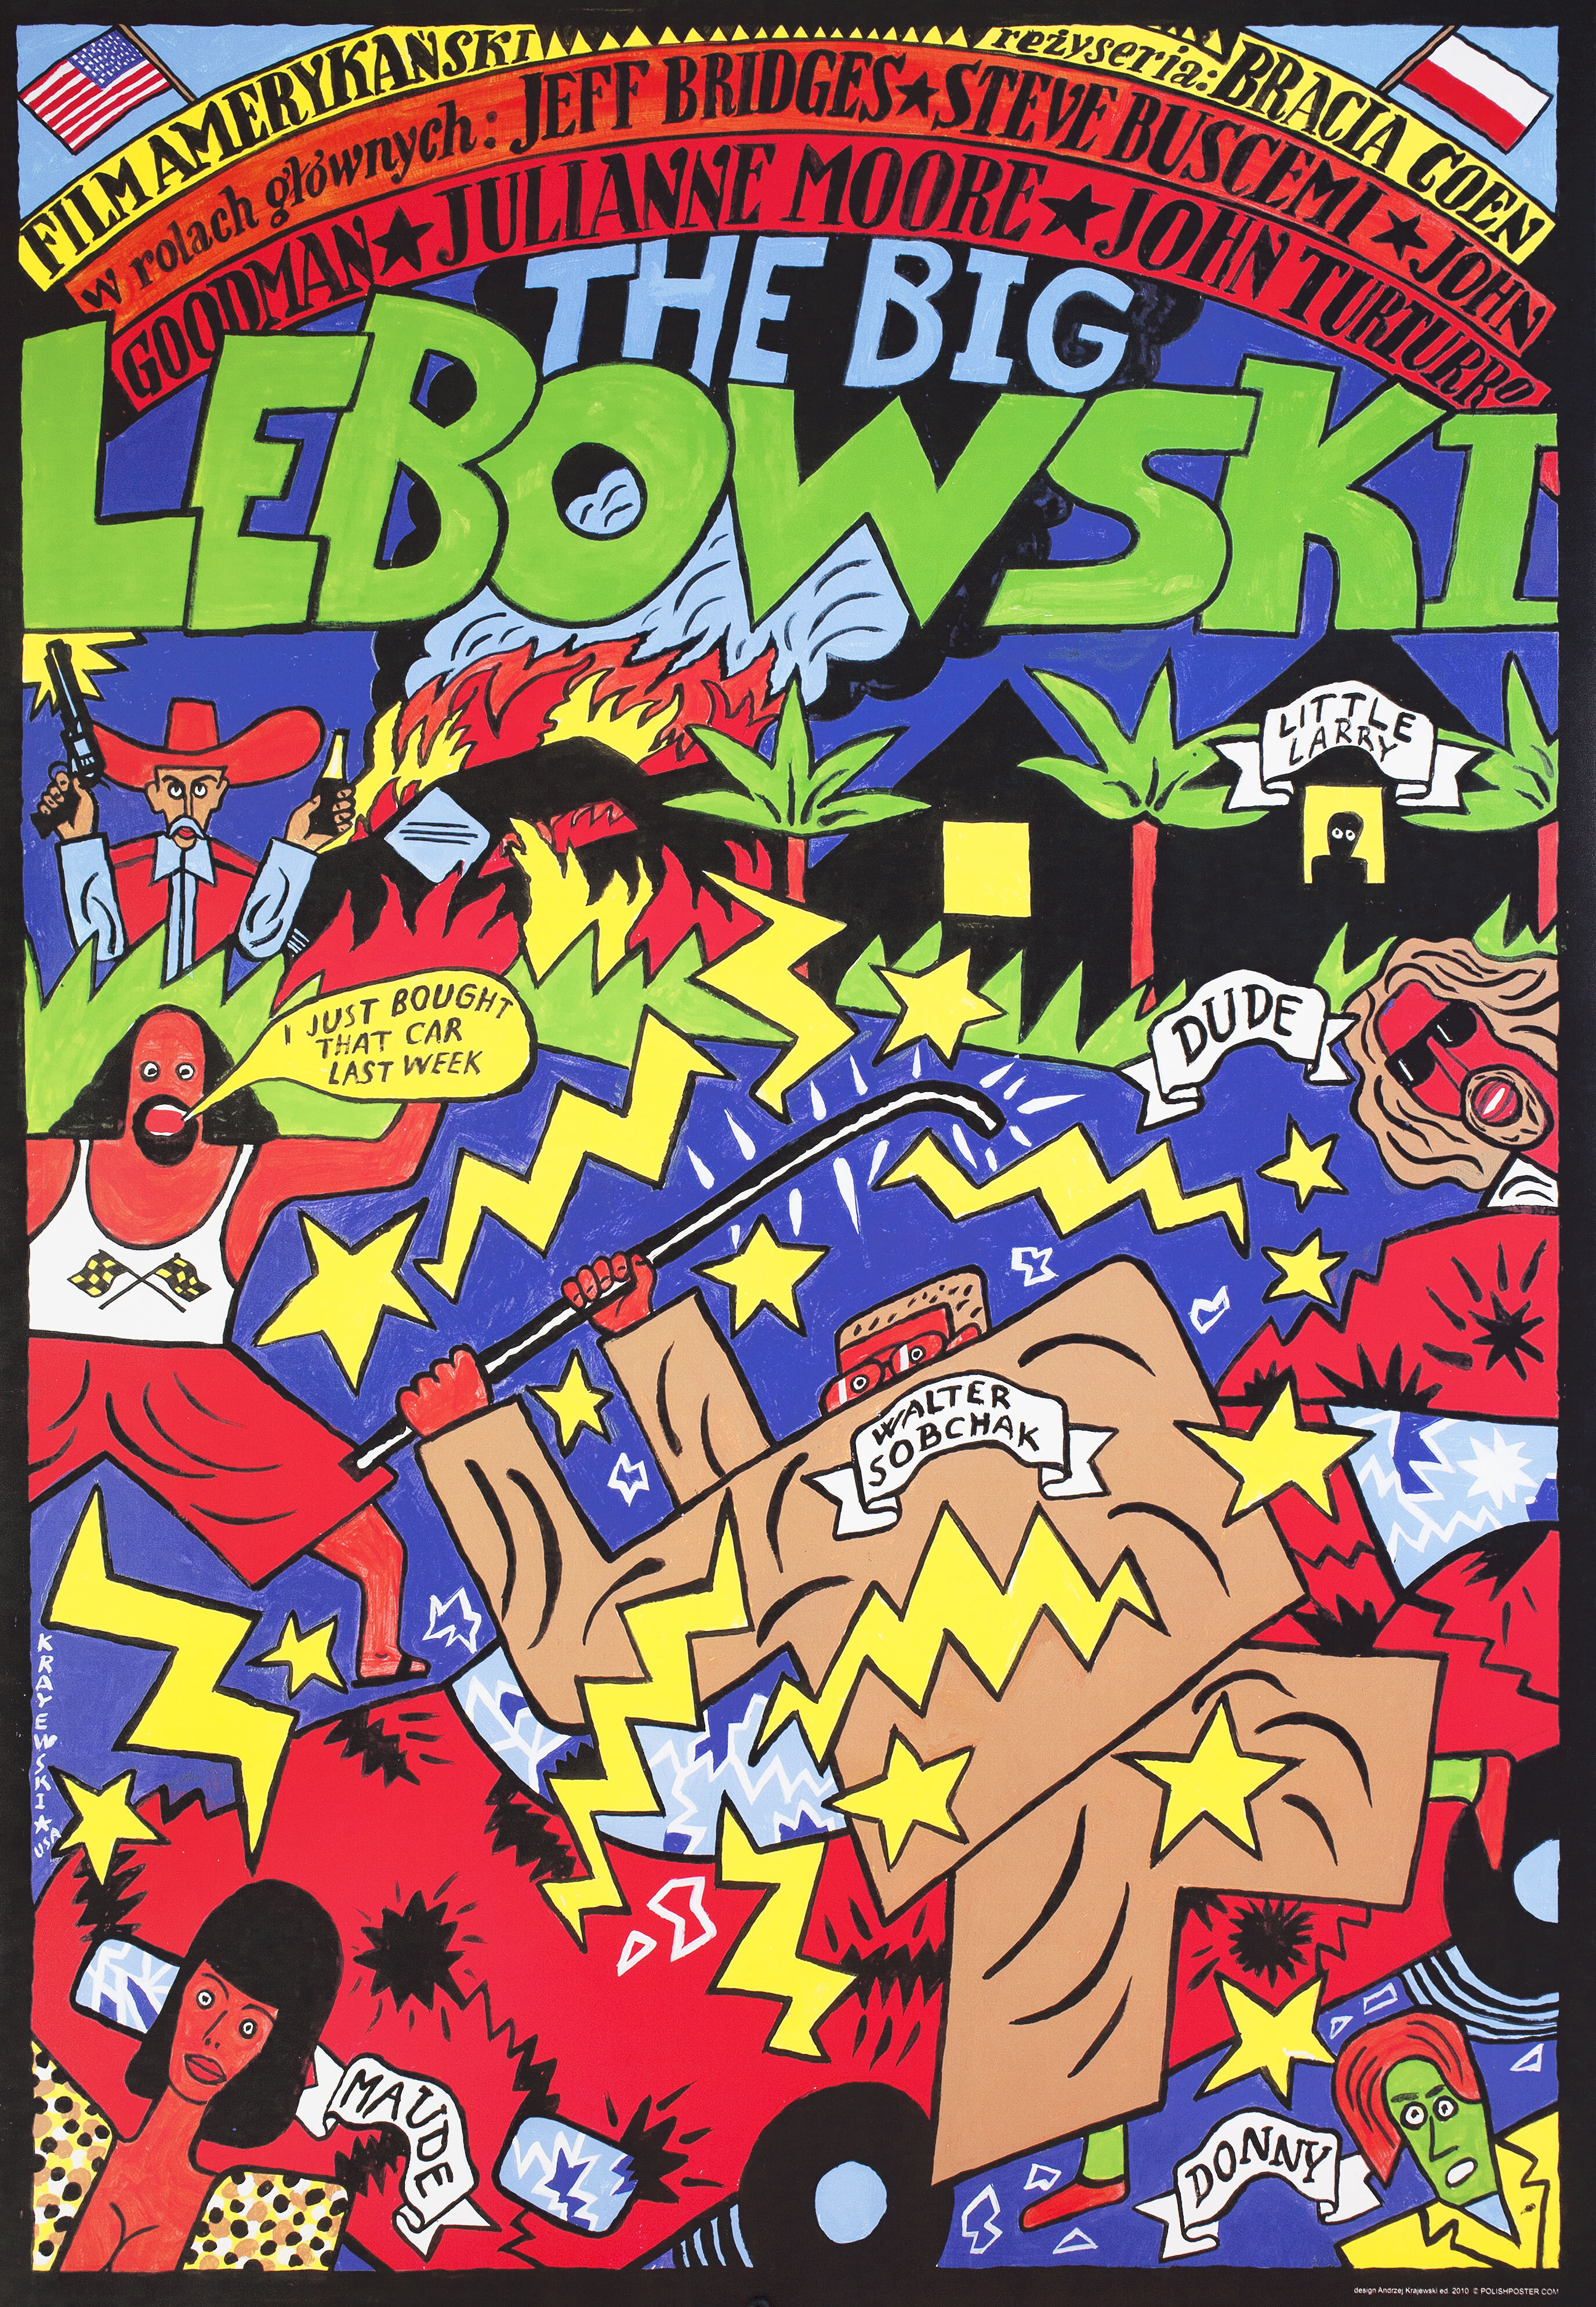 Большой Лебовски (The Big Lebowski, 1998), режиссёр Братья Коэн, польский плакат к фильму, 2010 год, автор Анджей Краевский